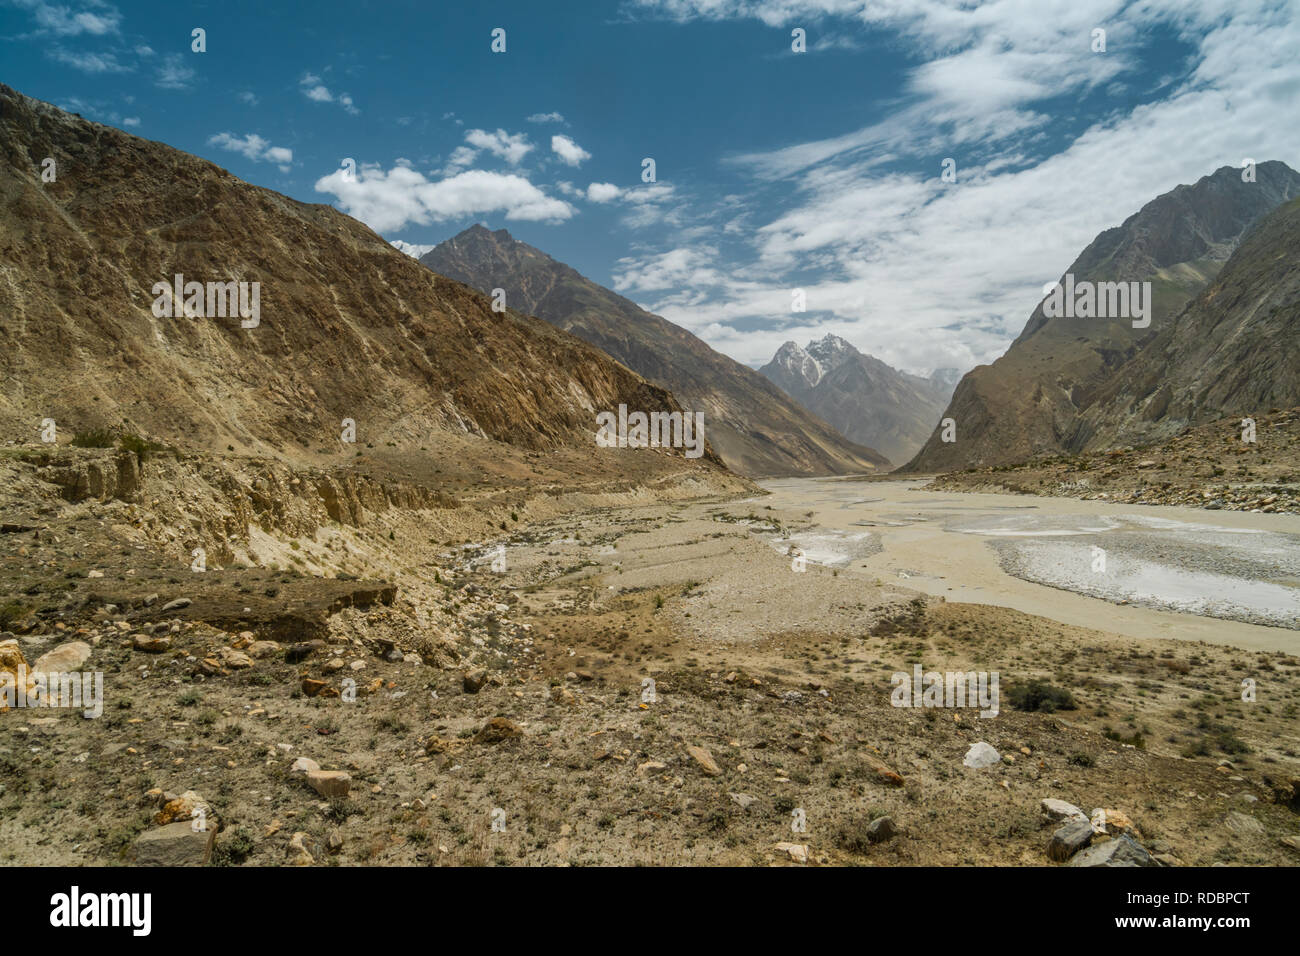 Scenic vallée menant au camp de base du K2 en montagnes du Karakoram, au Pakistan. Banque D'Images